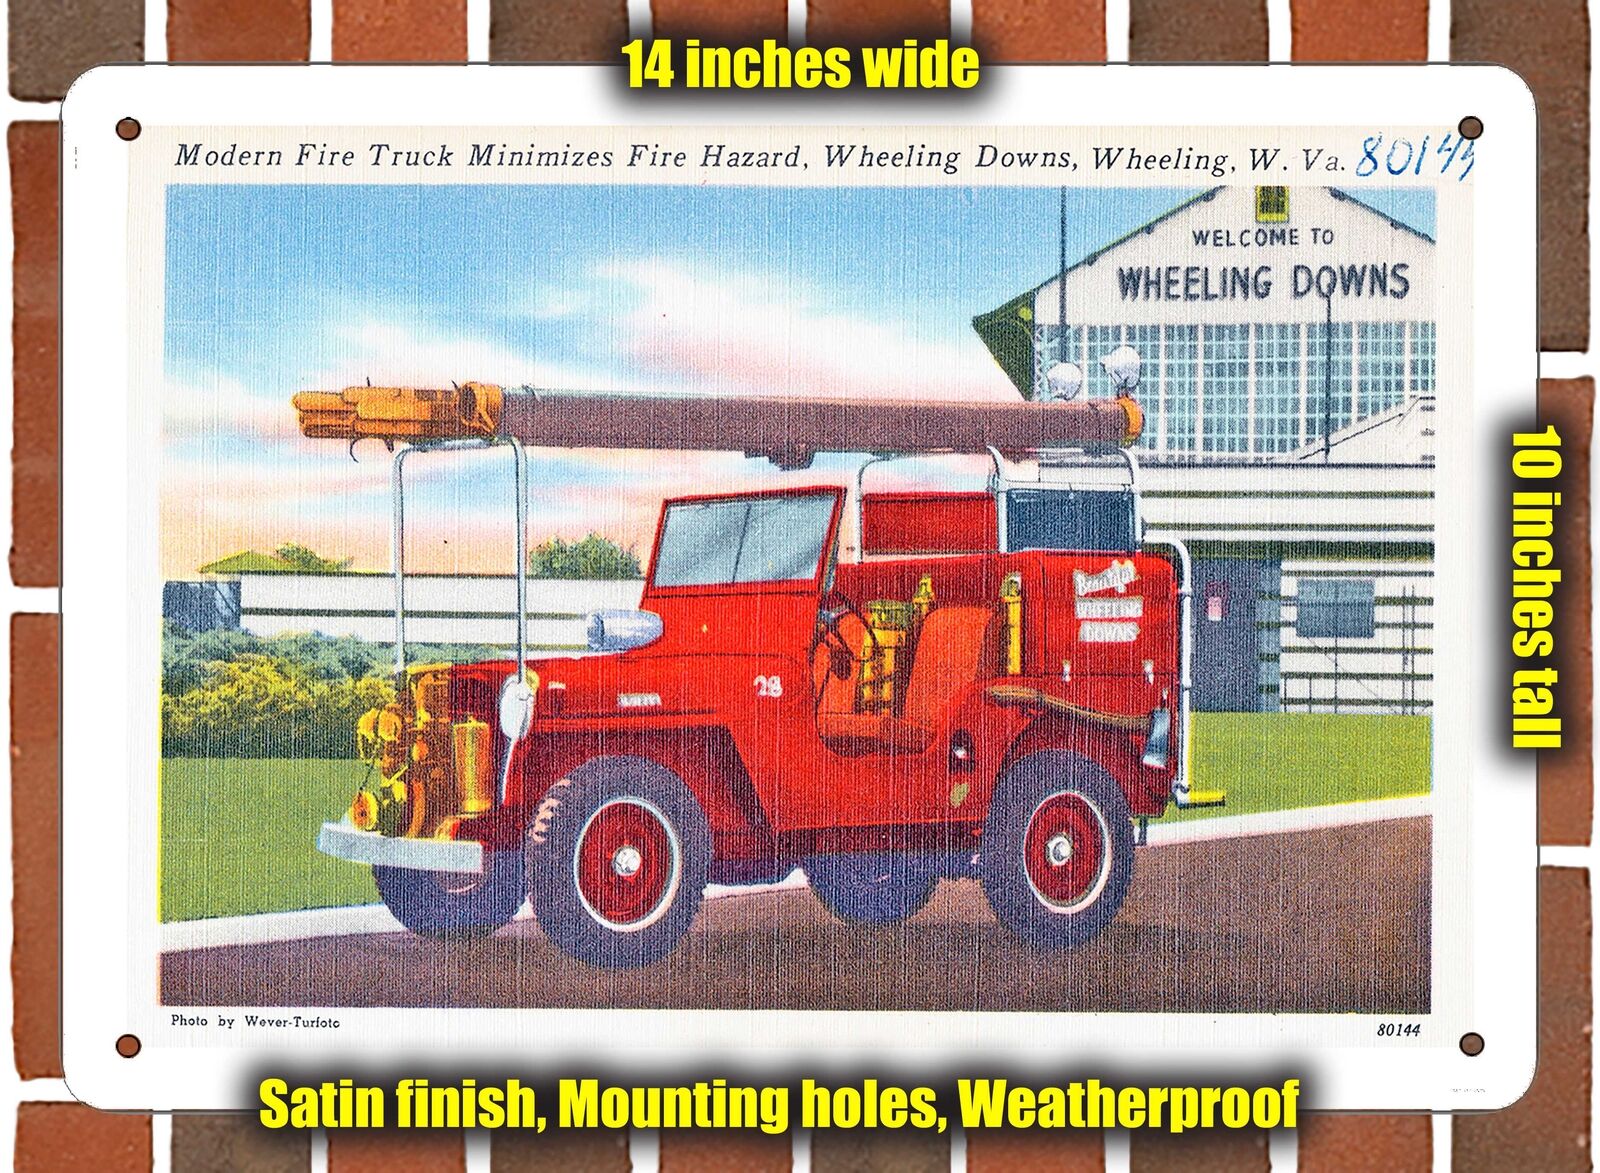 METAL SIGN - West Virginia Postcard - Modern Fire Truck Minimizes Fire Hazard,